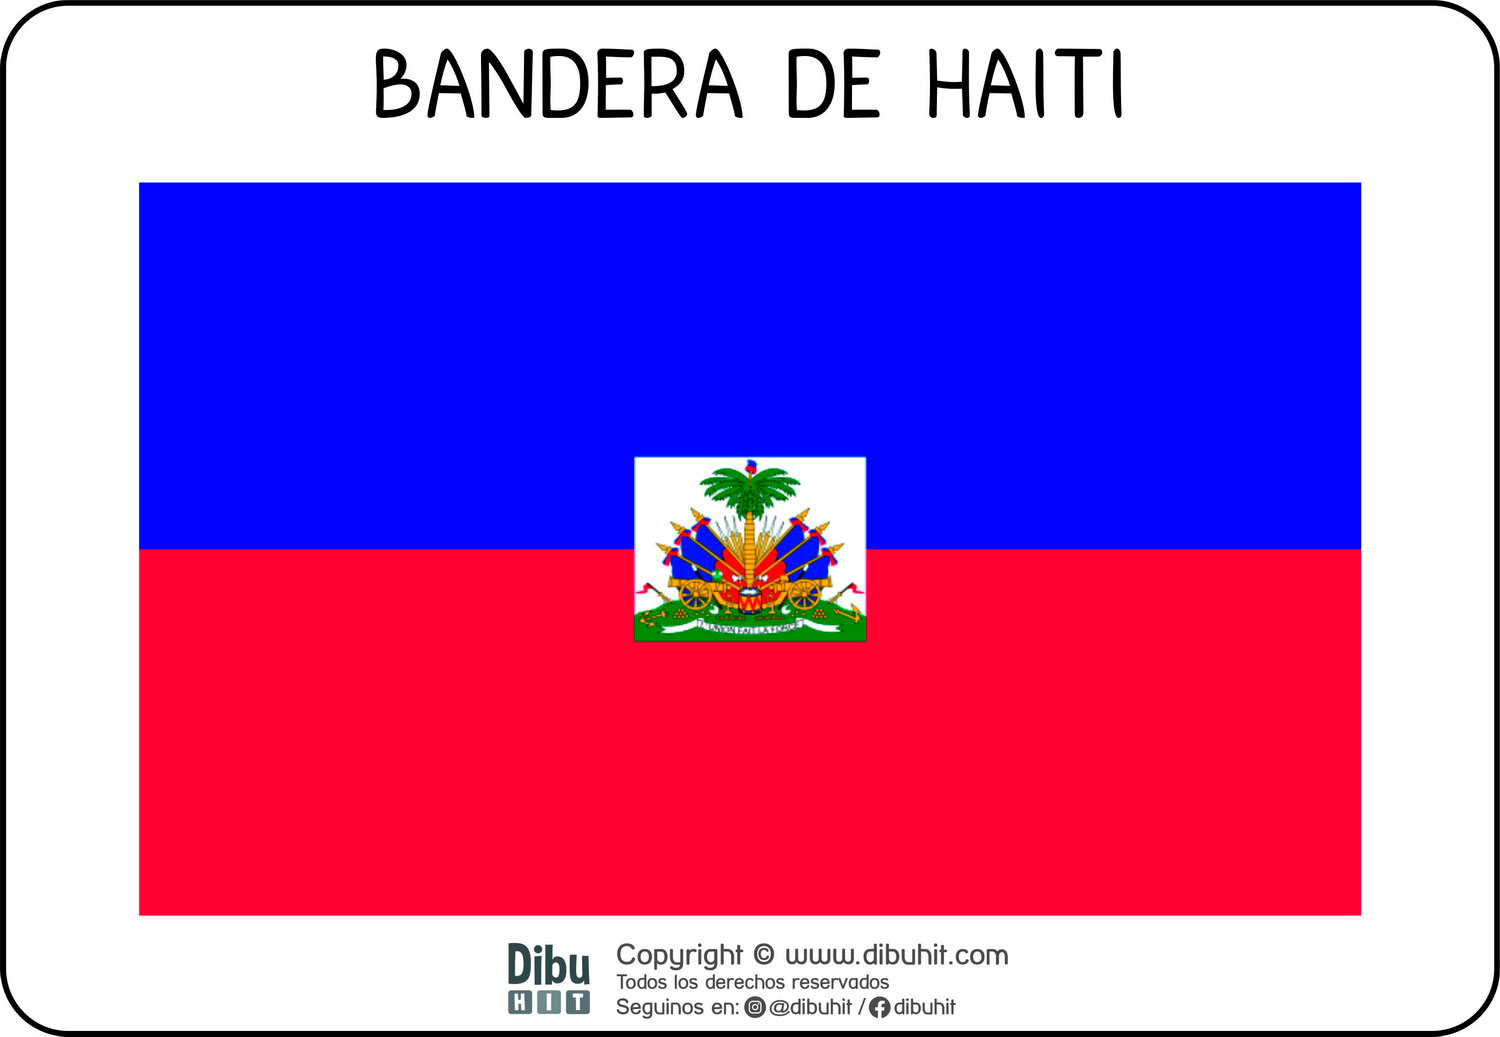 Lamina didactica bandera de Haiti a colores